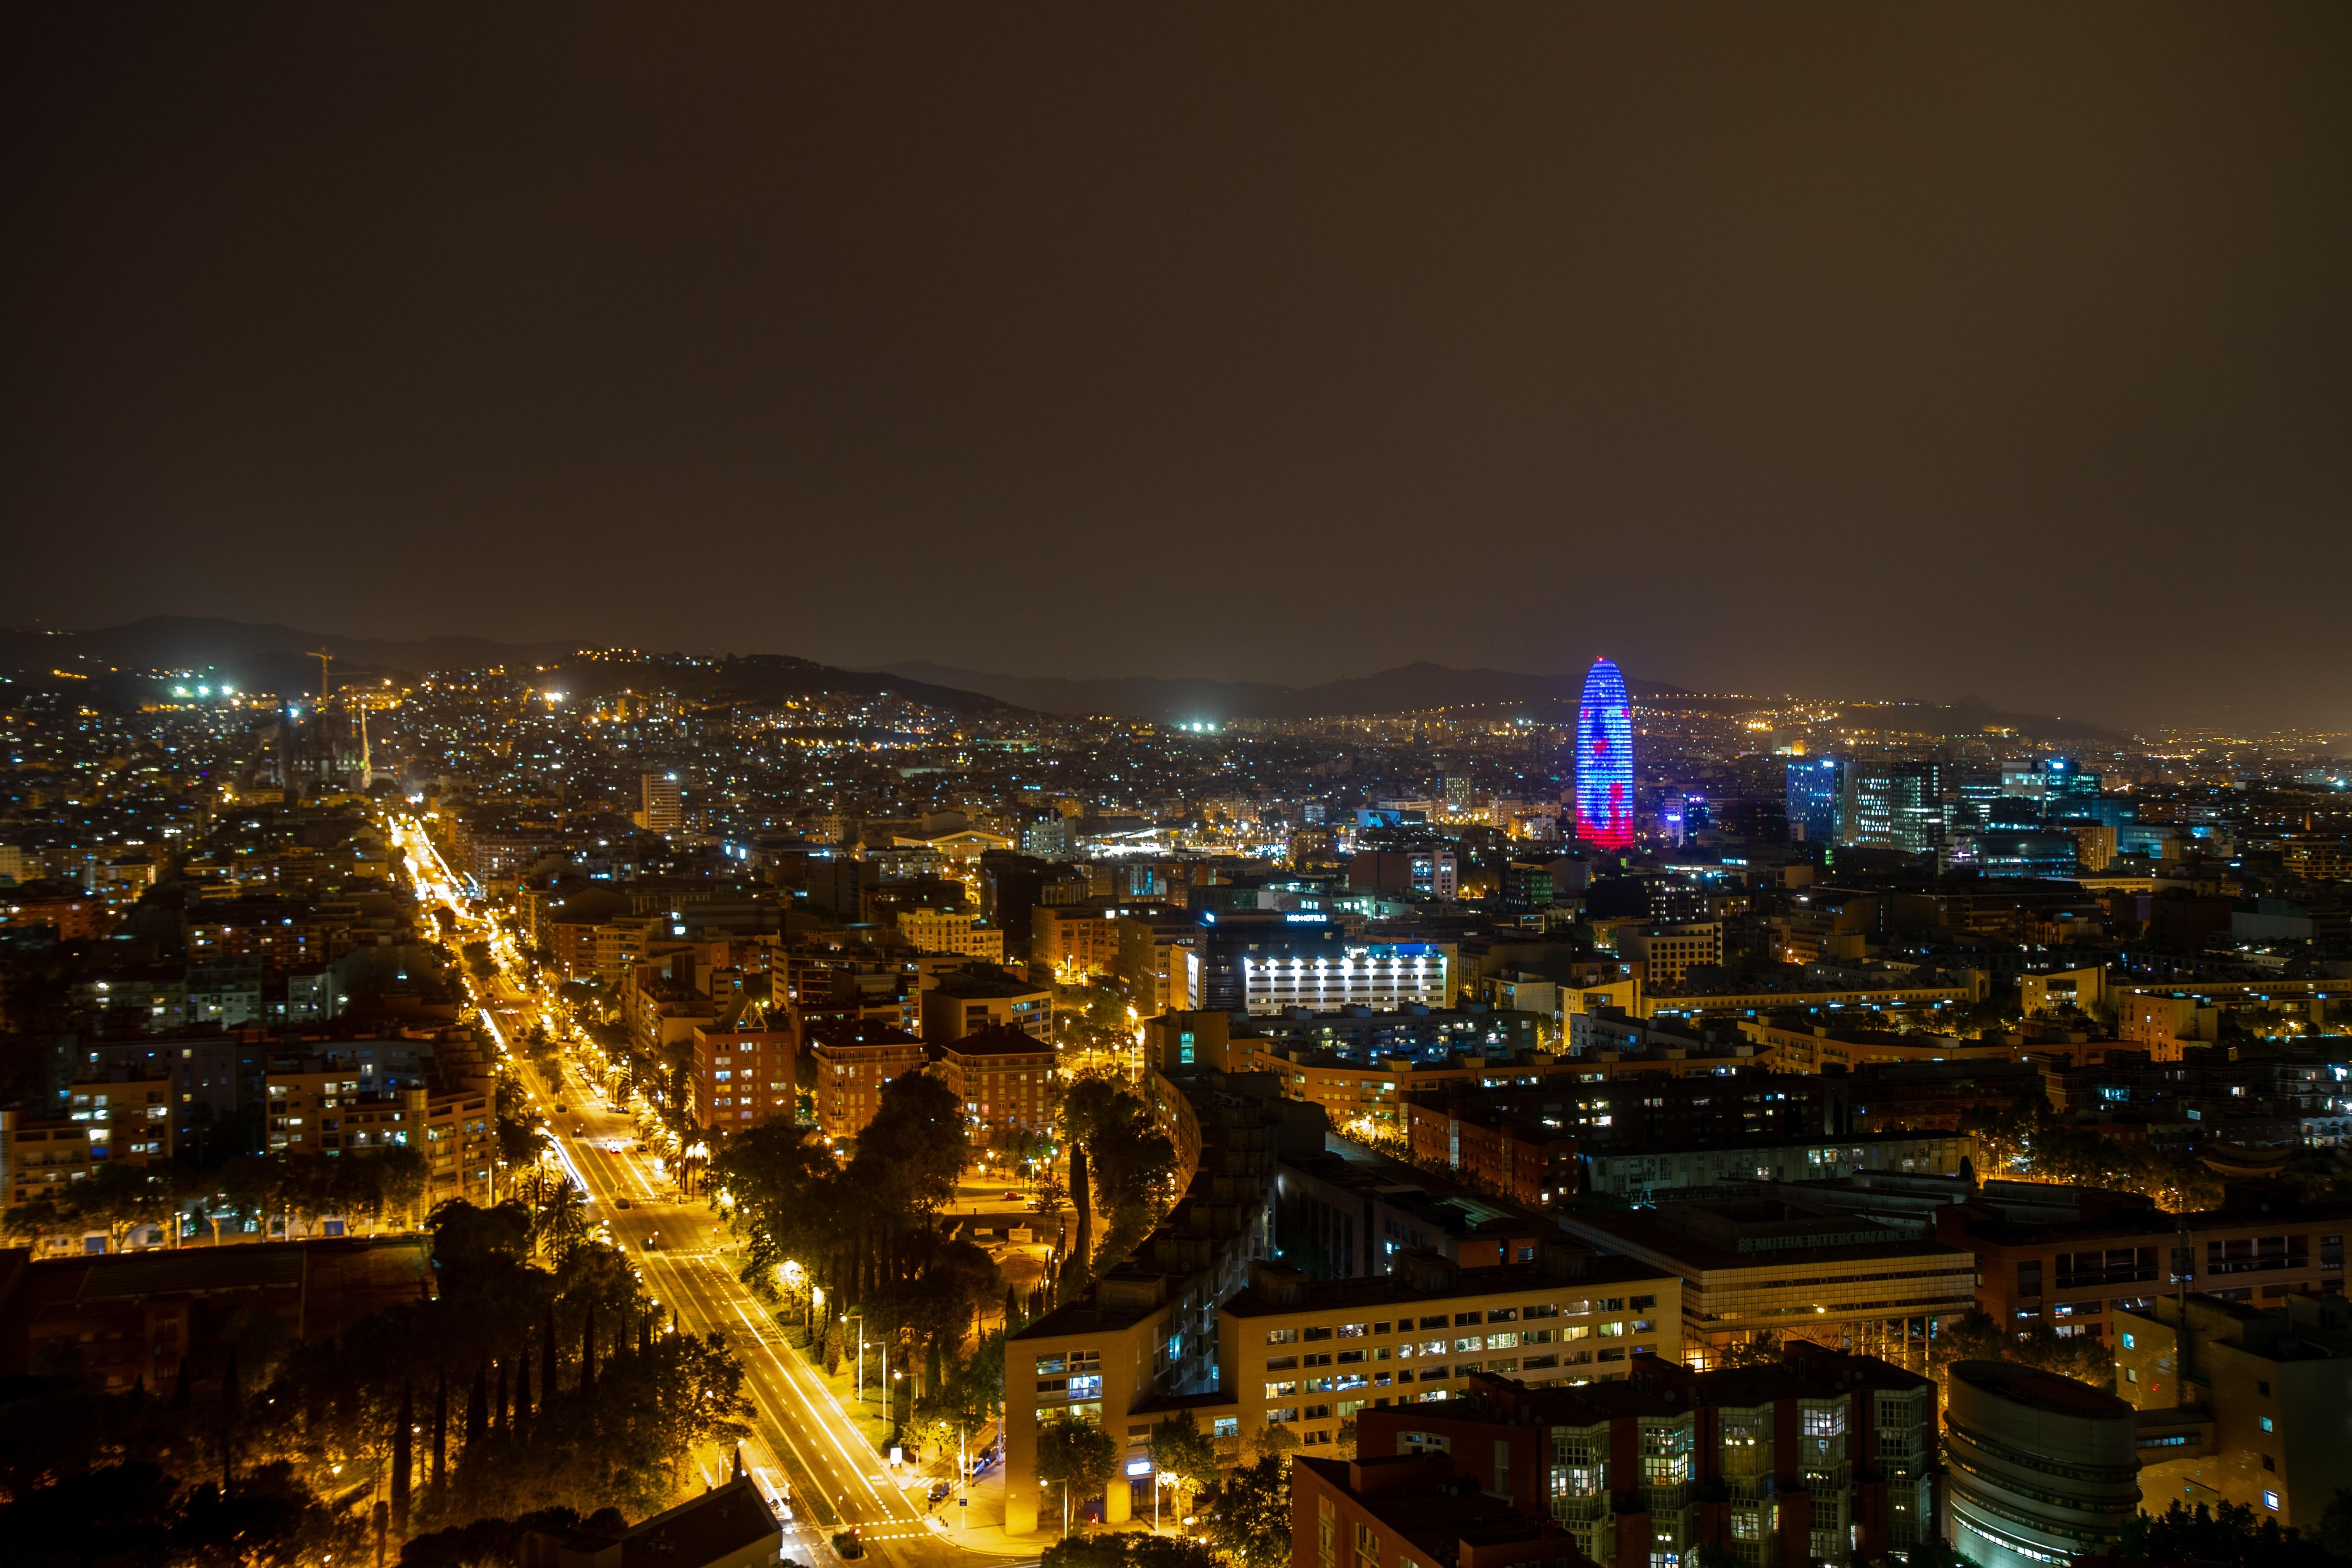 Barcelona in night